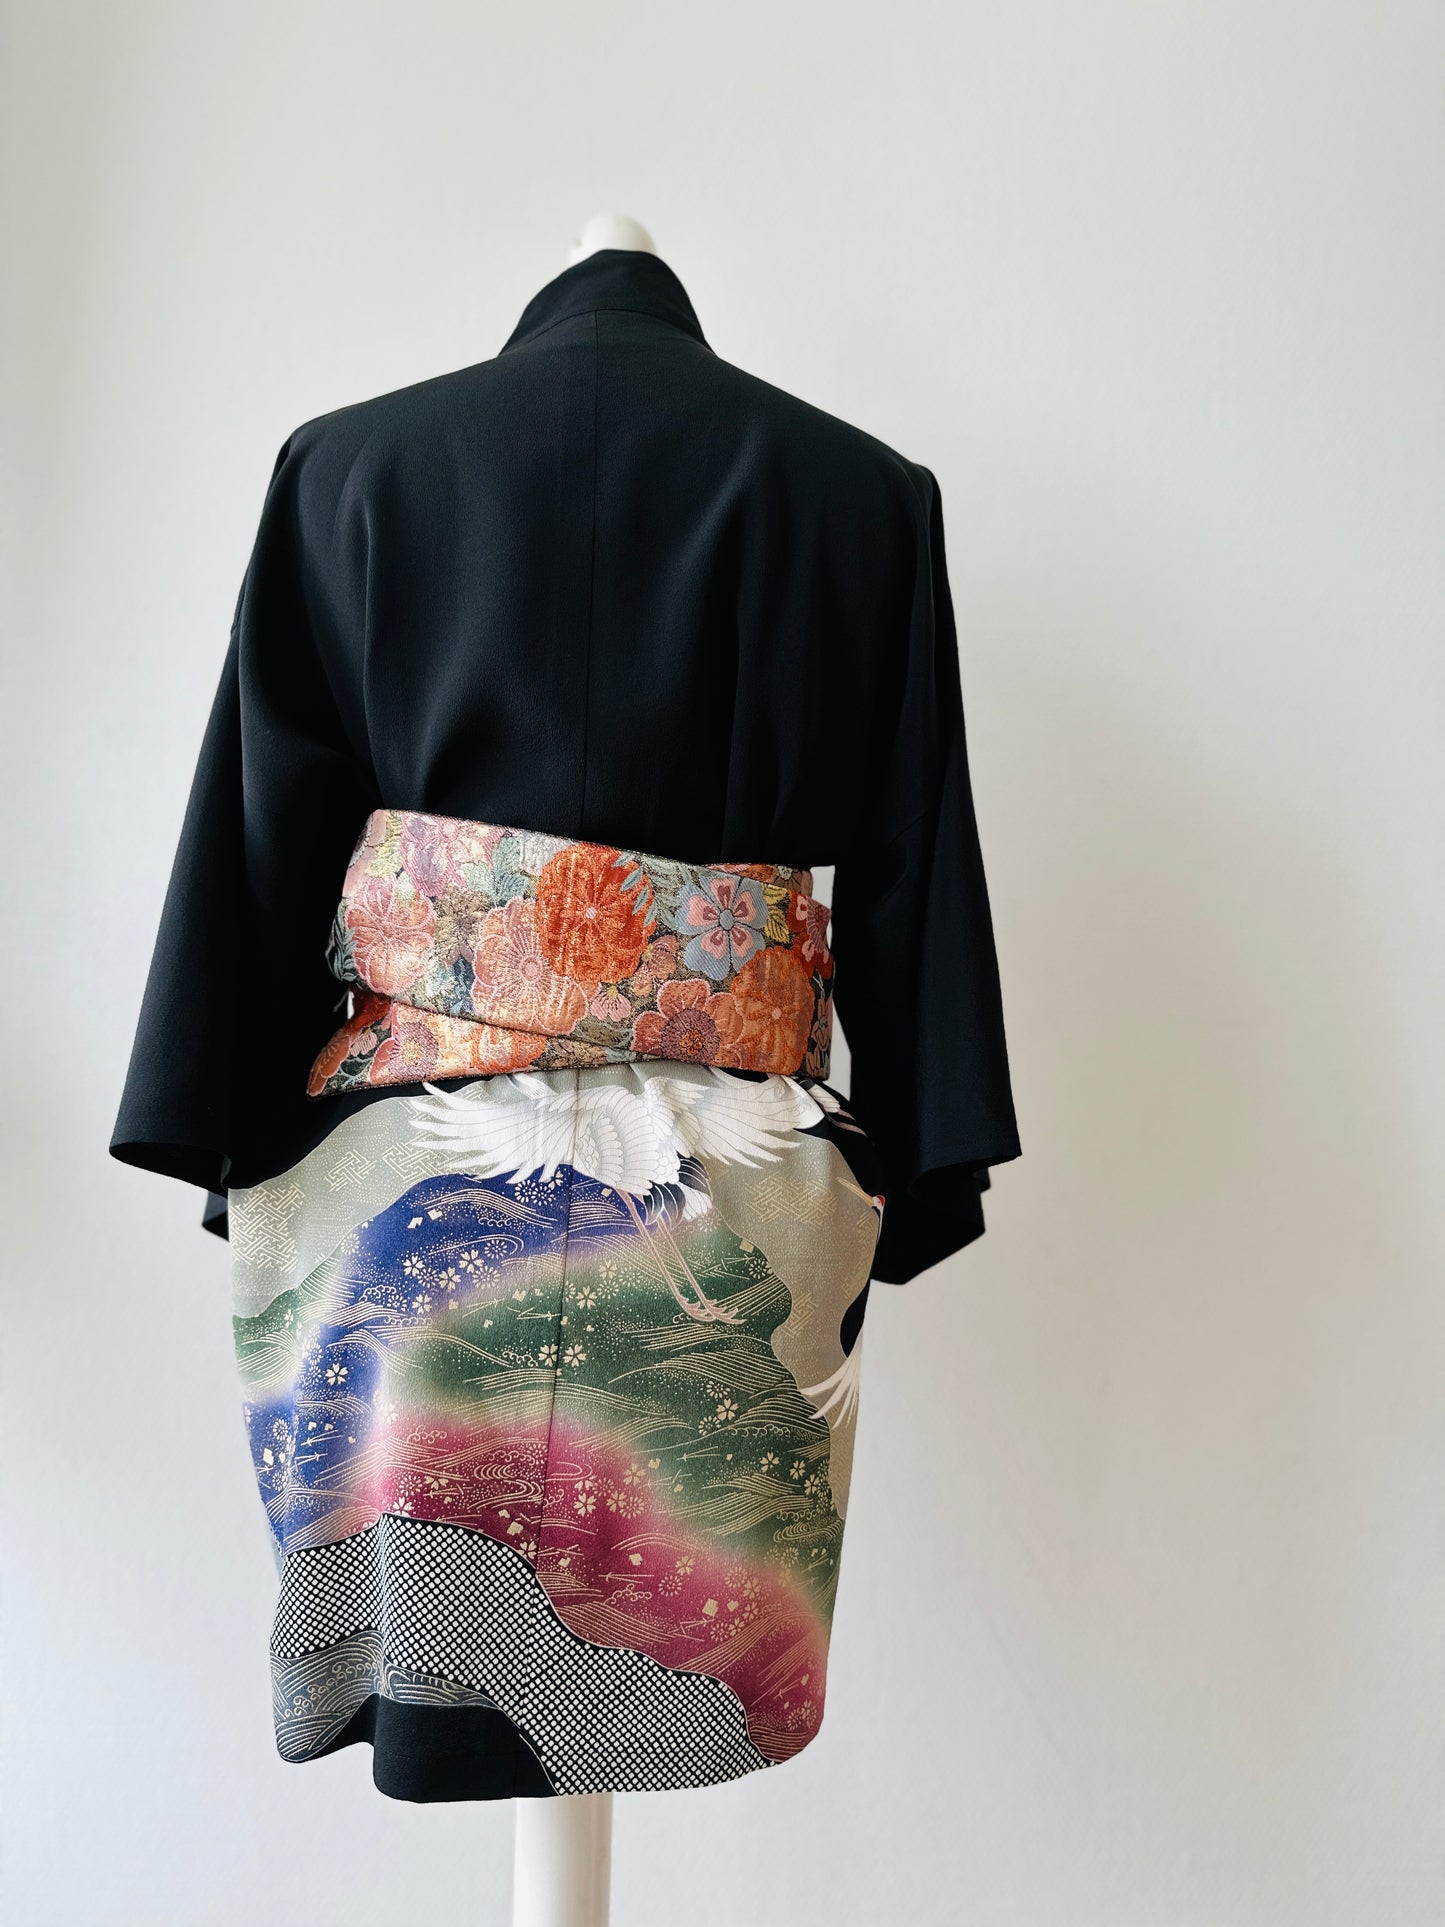 【Noir, grues en vol】 veste heureuse ＜ Excellent ・ Silk ＞ pour les hommes, pour les femmes, le kimono japonais, les vêtements unisexais japonais, l'unisexe, les cadeaux japonais, les dessins originaux